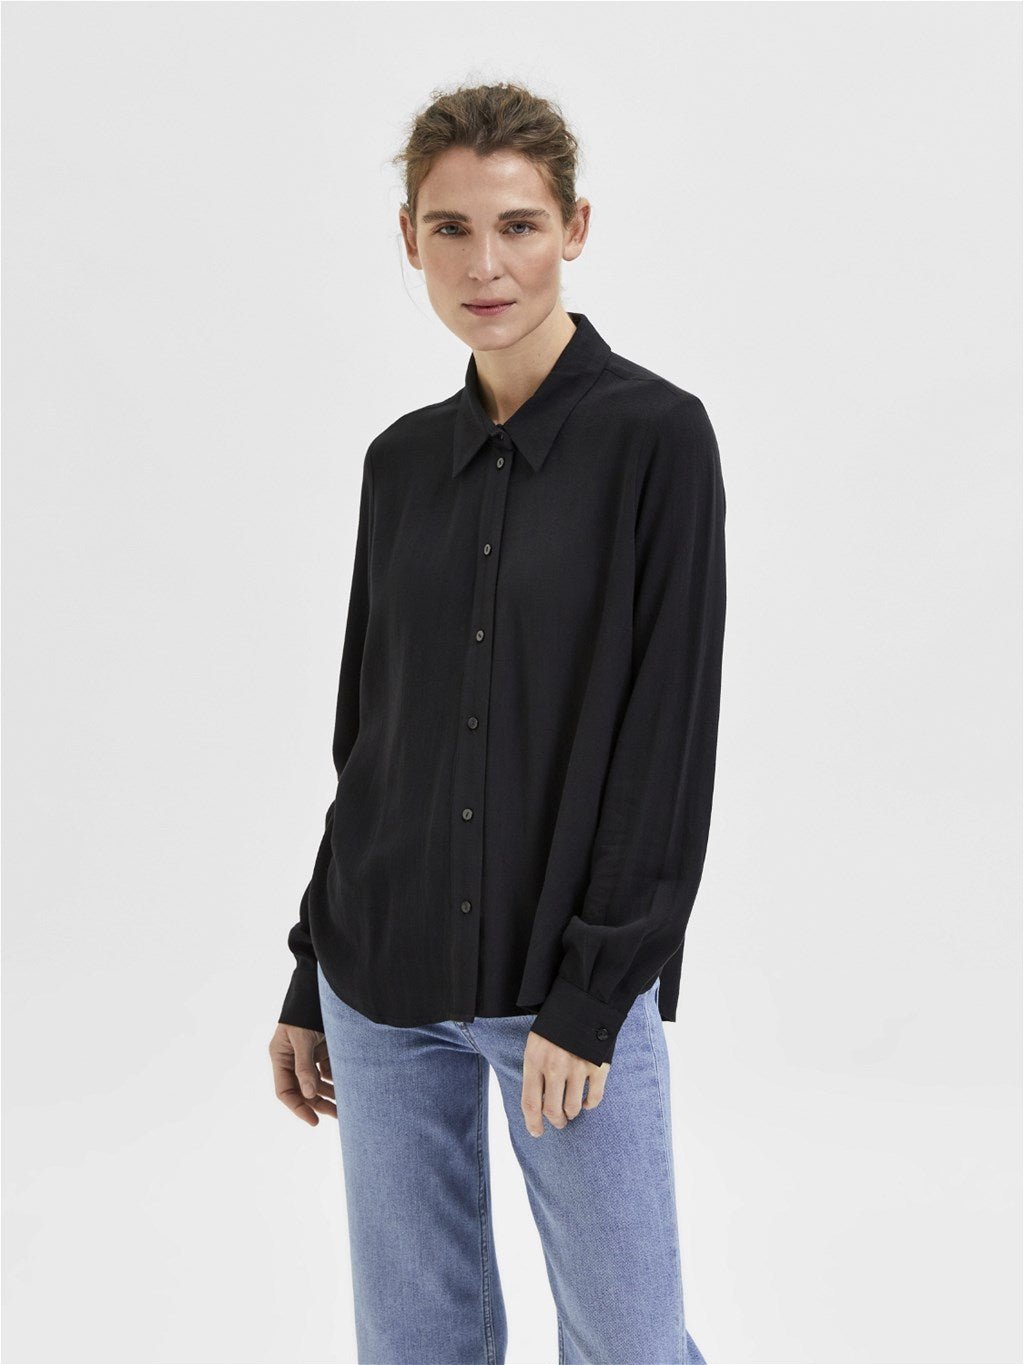 Viva Ls Shirt Black | Skjorter og bluser | Smuk - Dameklær på nett